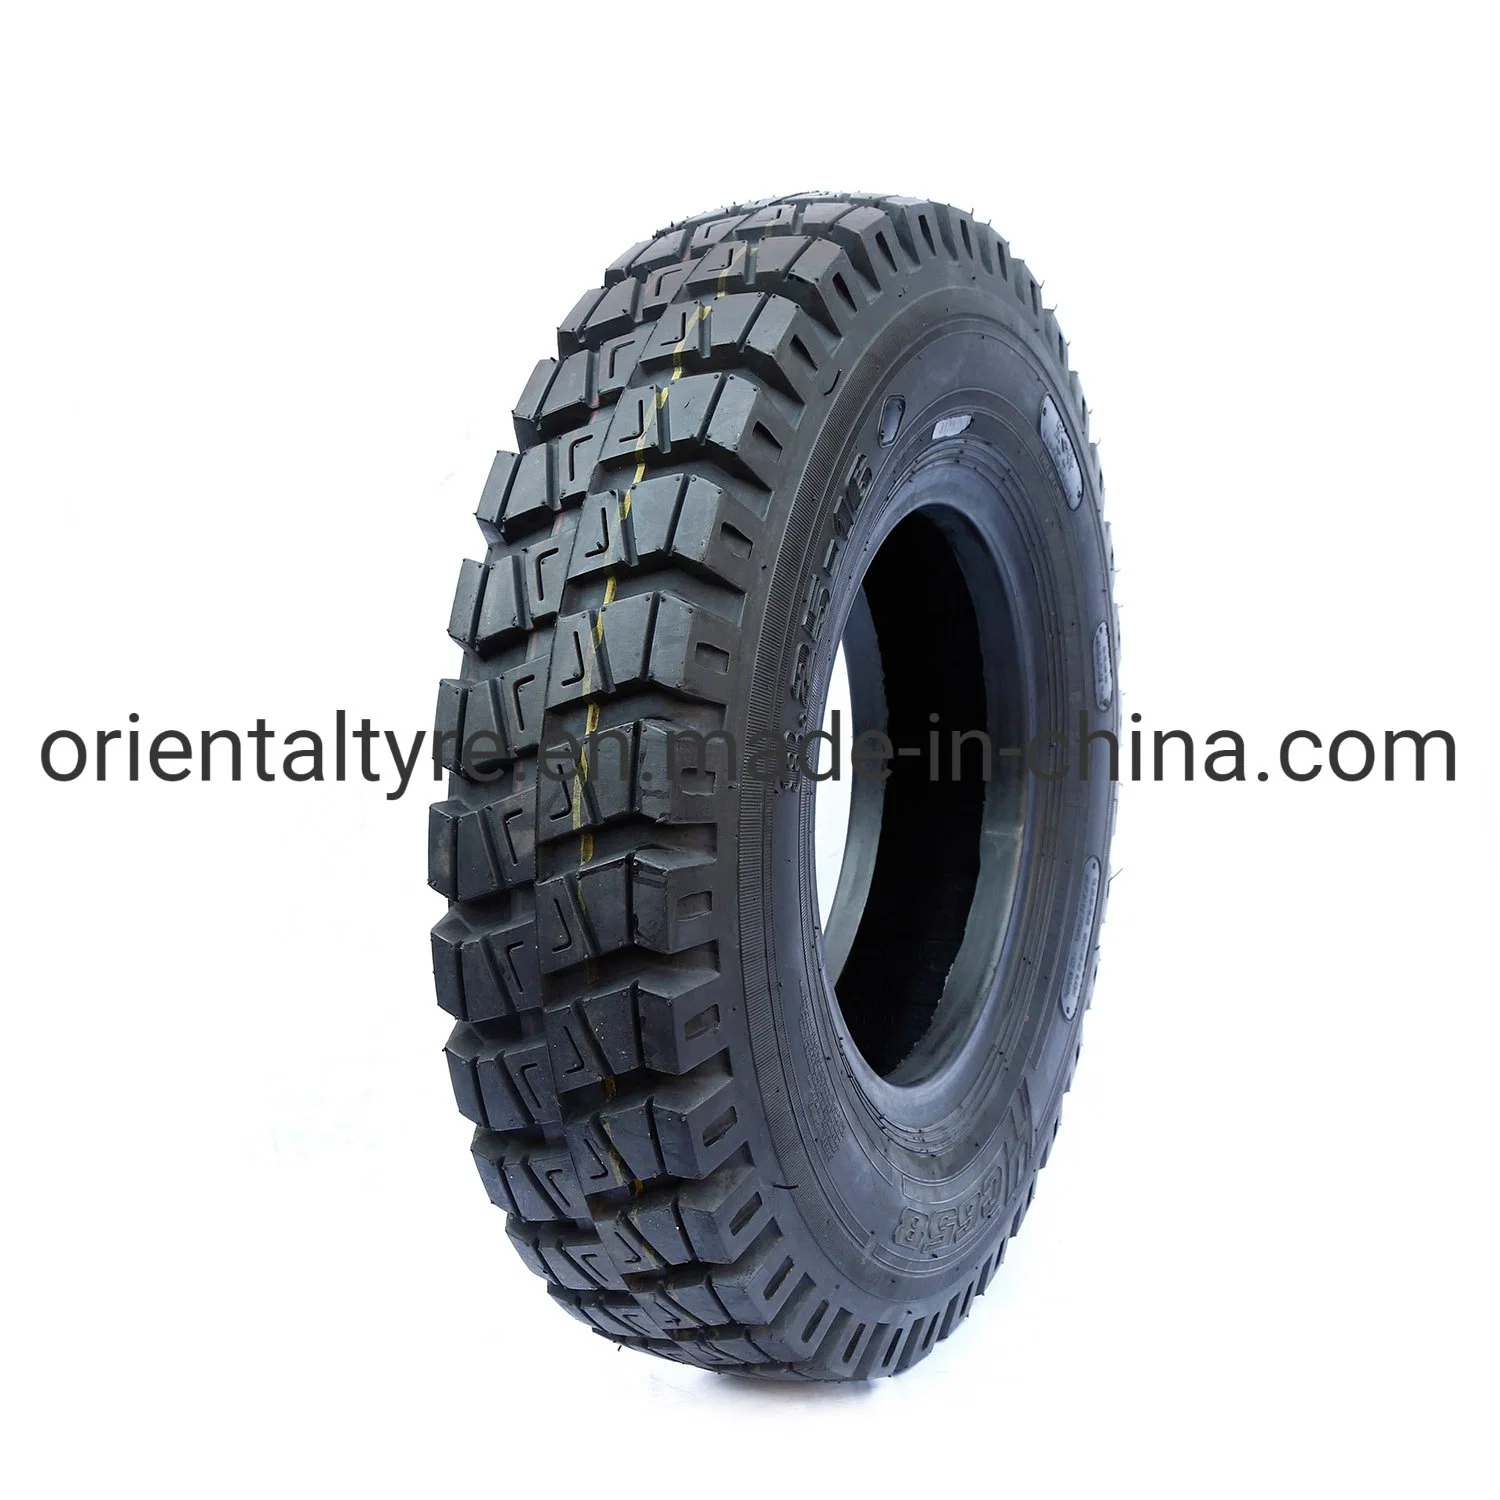 Haut de la qualité en nylon de polarisation off-pneu The-Road OTR E3/L3 de la construction des pneus de roue de niveleuse Earthmover bouteur pneu de camion à benne de chargeur OTR 14/90-16 16/70-16